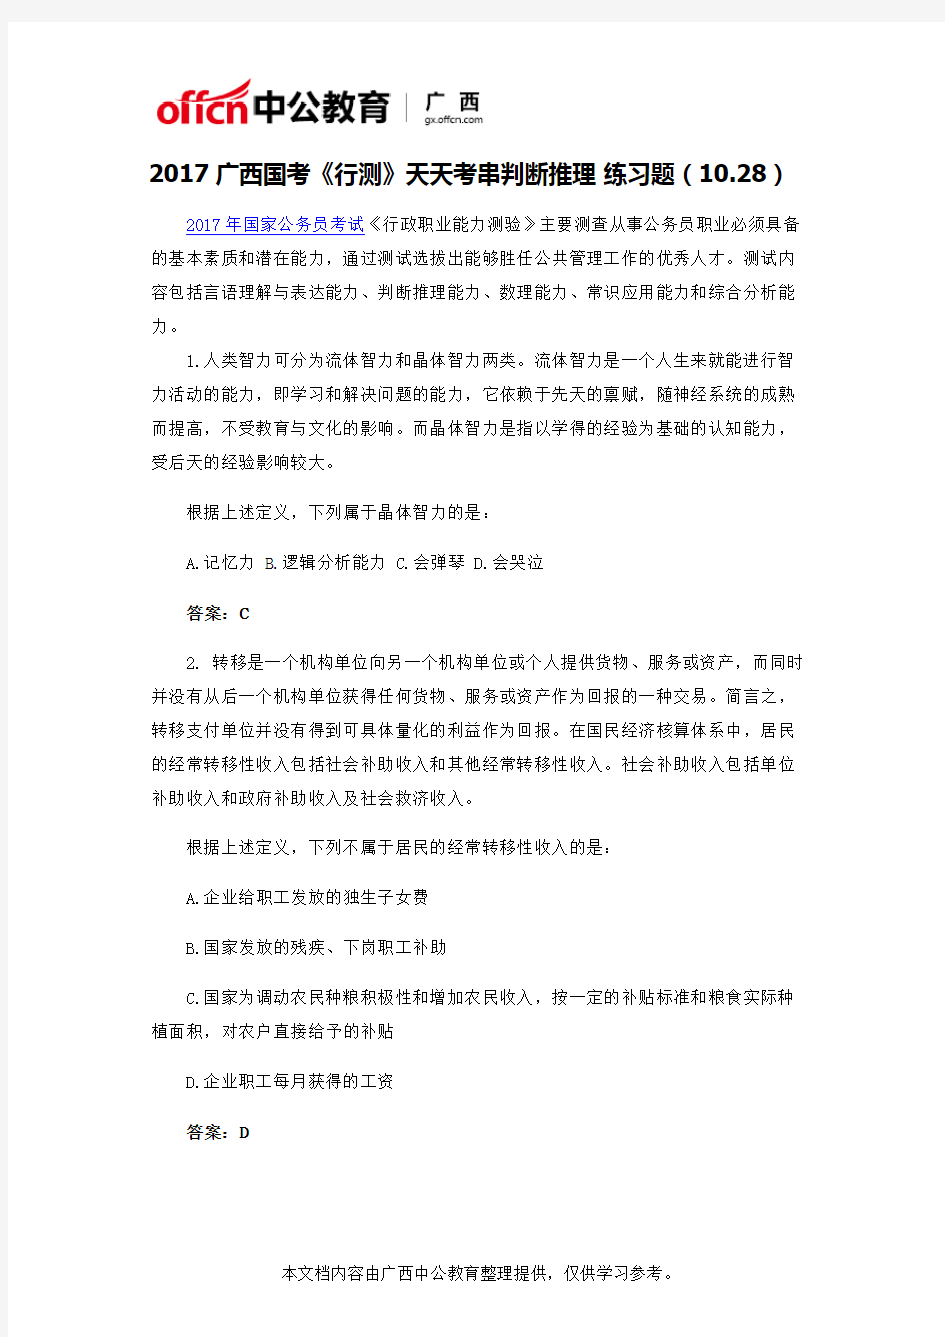 2017广西国考《行测》天天考串判断推理 练习题(10.28)